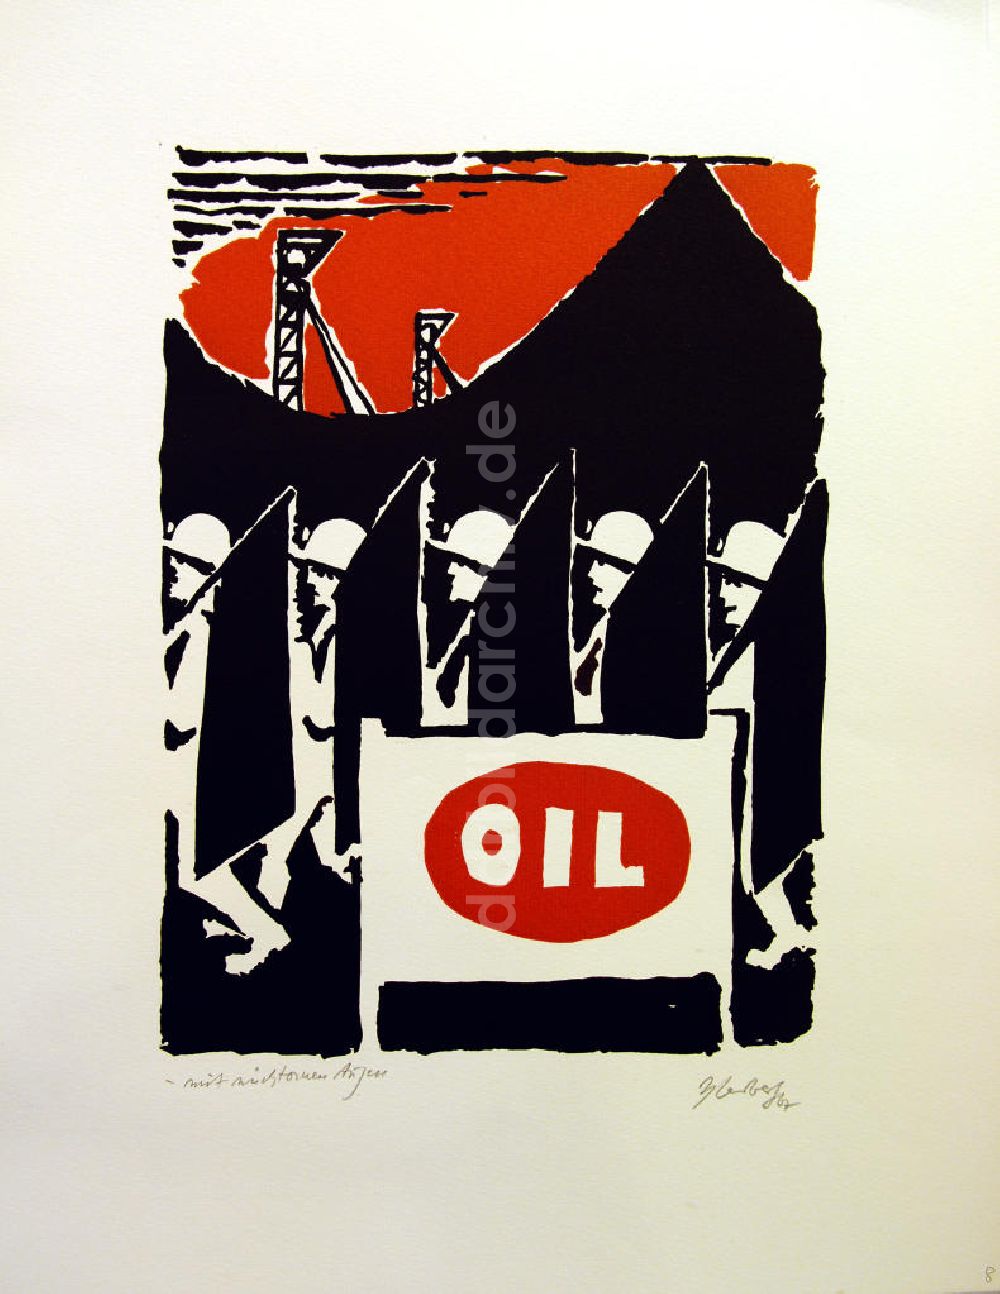 DDR-Fotoarchiv: Berlin - Grafik von Herbert Sandberg Motiv 9 aus dem Zyklus Bilder zum Kommunistischen Manifest aus dem Jahr 1967